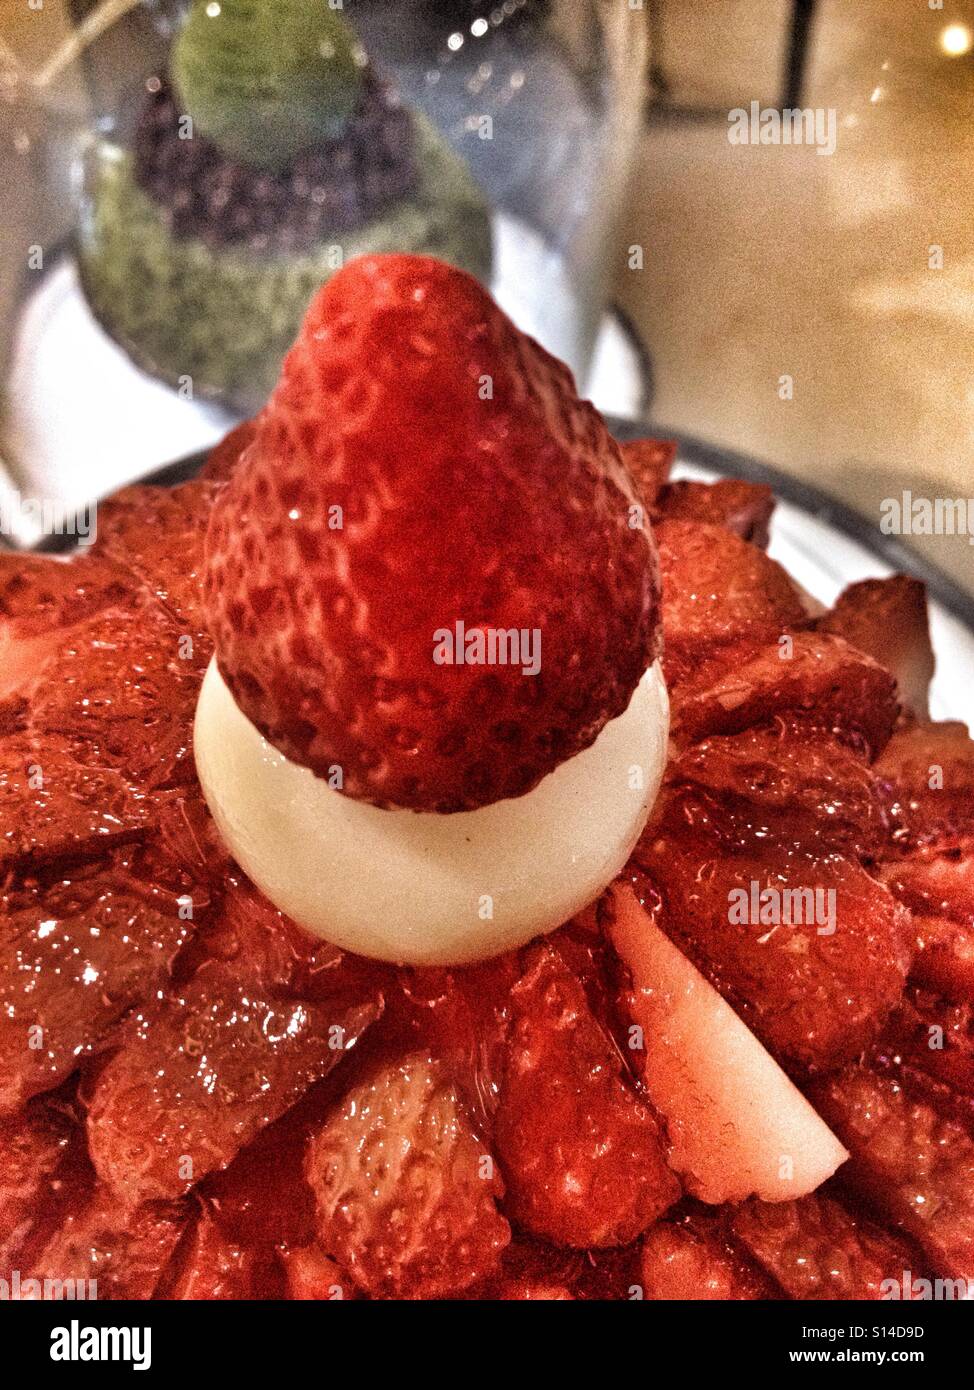 Kalten rasiert Eis Erdbeer Dessert, mit Tonnen von Erdbeeren befestigt Stockfoto